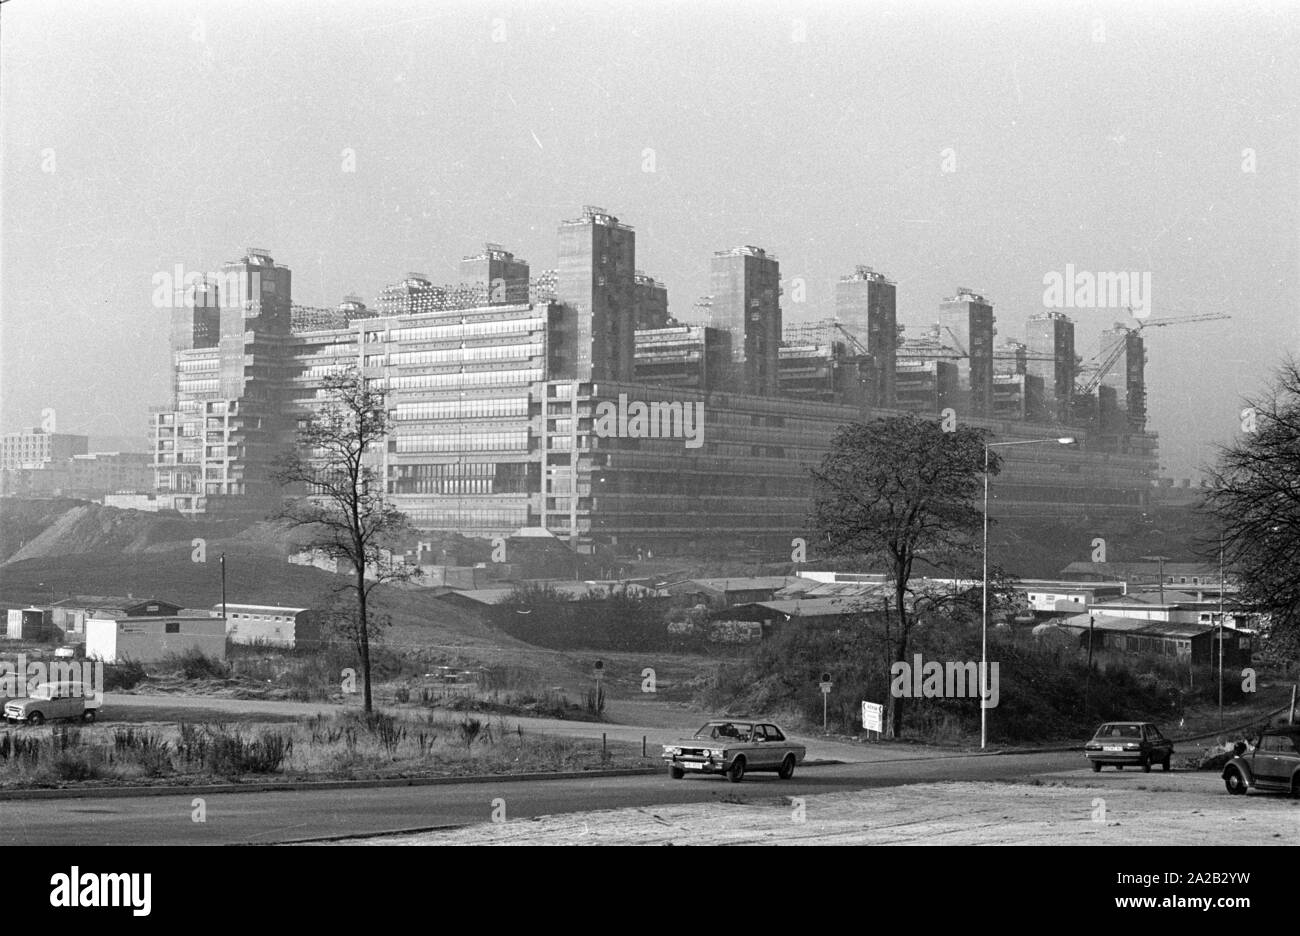 Blick auf die Baustelle des Universitaetsklinikum Aachen (Universitätsklinikum Aachen). Der Bau im Jahre 1971 begonnen, wurde das Gebäude nach und nach im Jahr 1984 beendet, die feierliche Einweihung fand am 21.3.1985. Das Bild zeigt die Shell, die bereits 1978 abgeschlossen wurde. Stockfoto